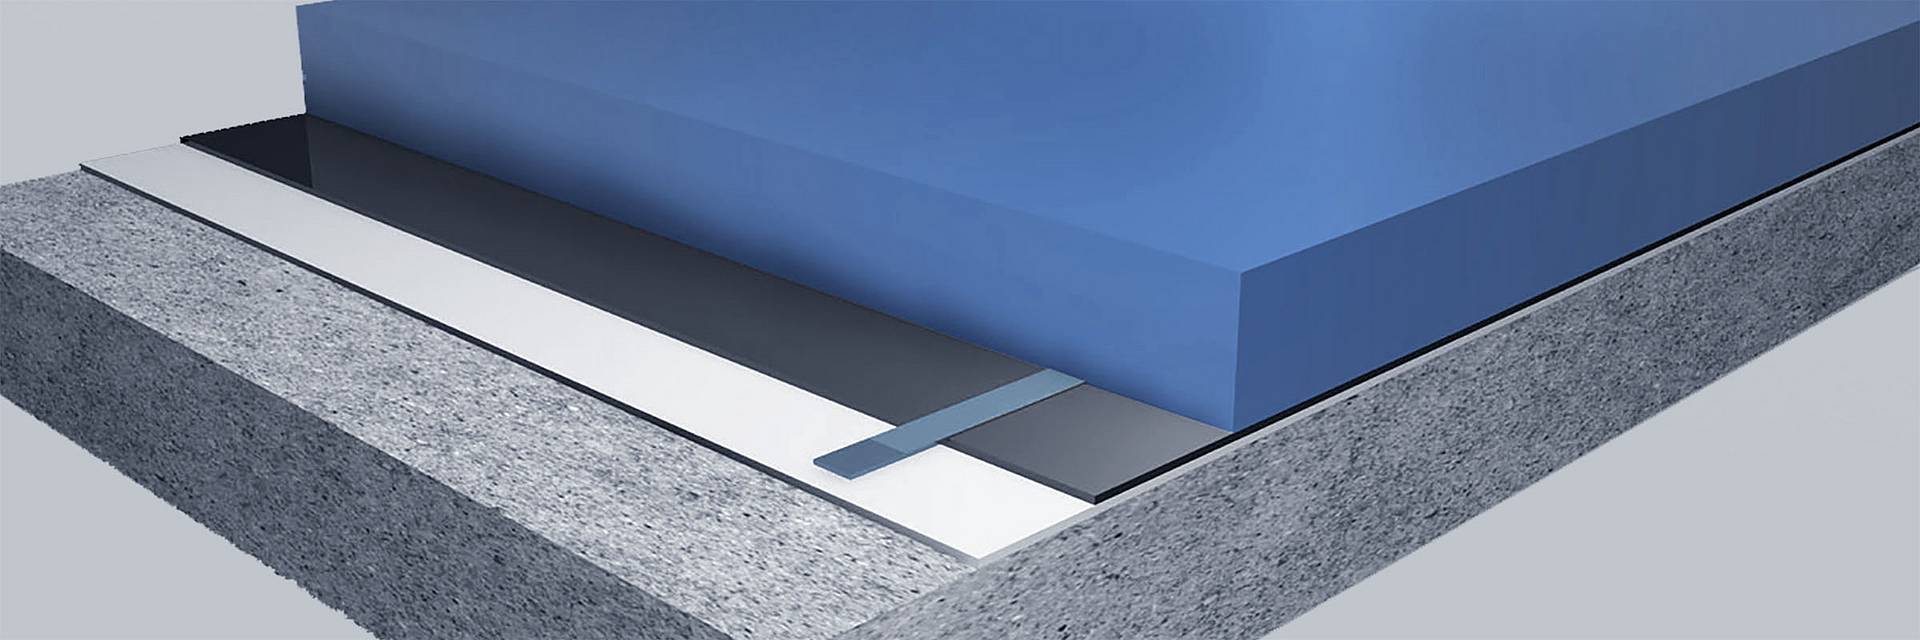 Build-up of industrial floor with conductive floor coating WHG